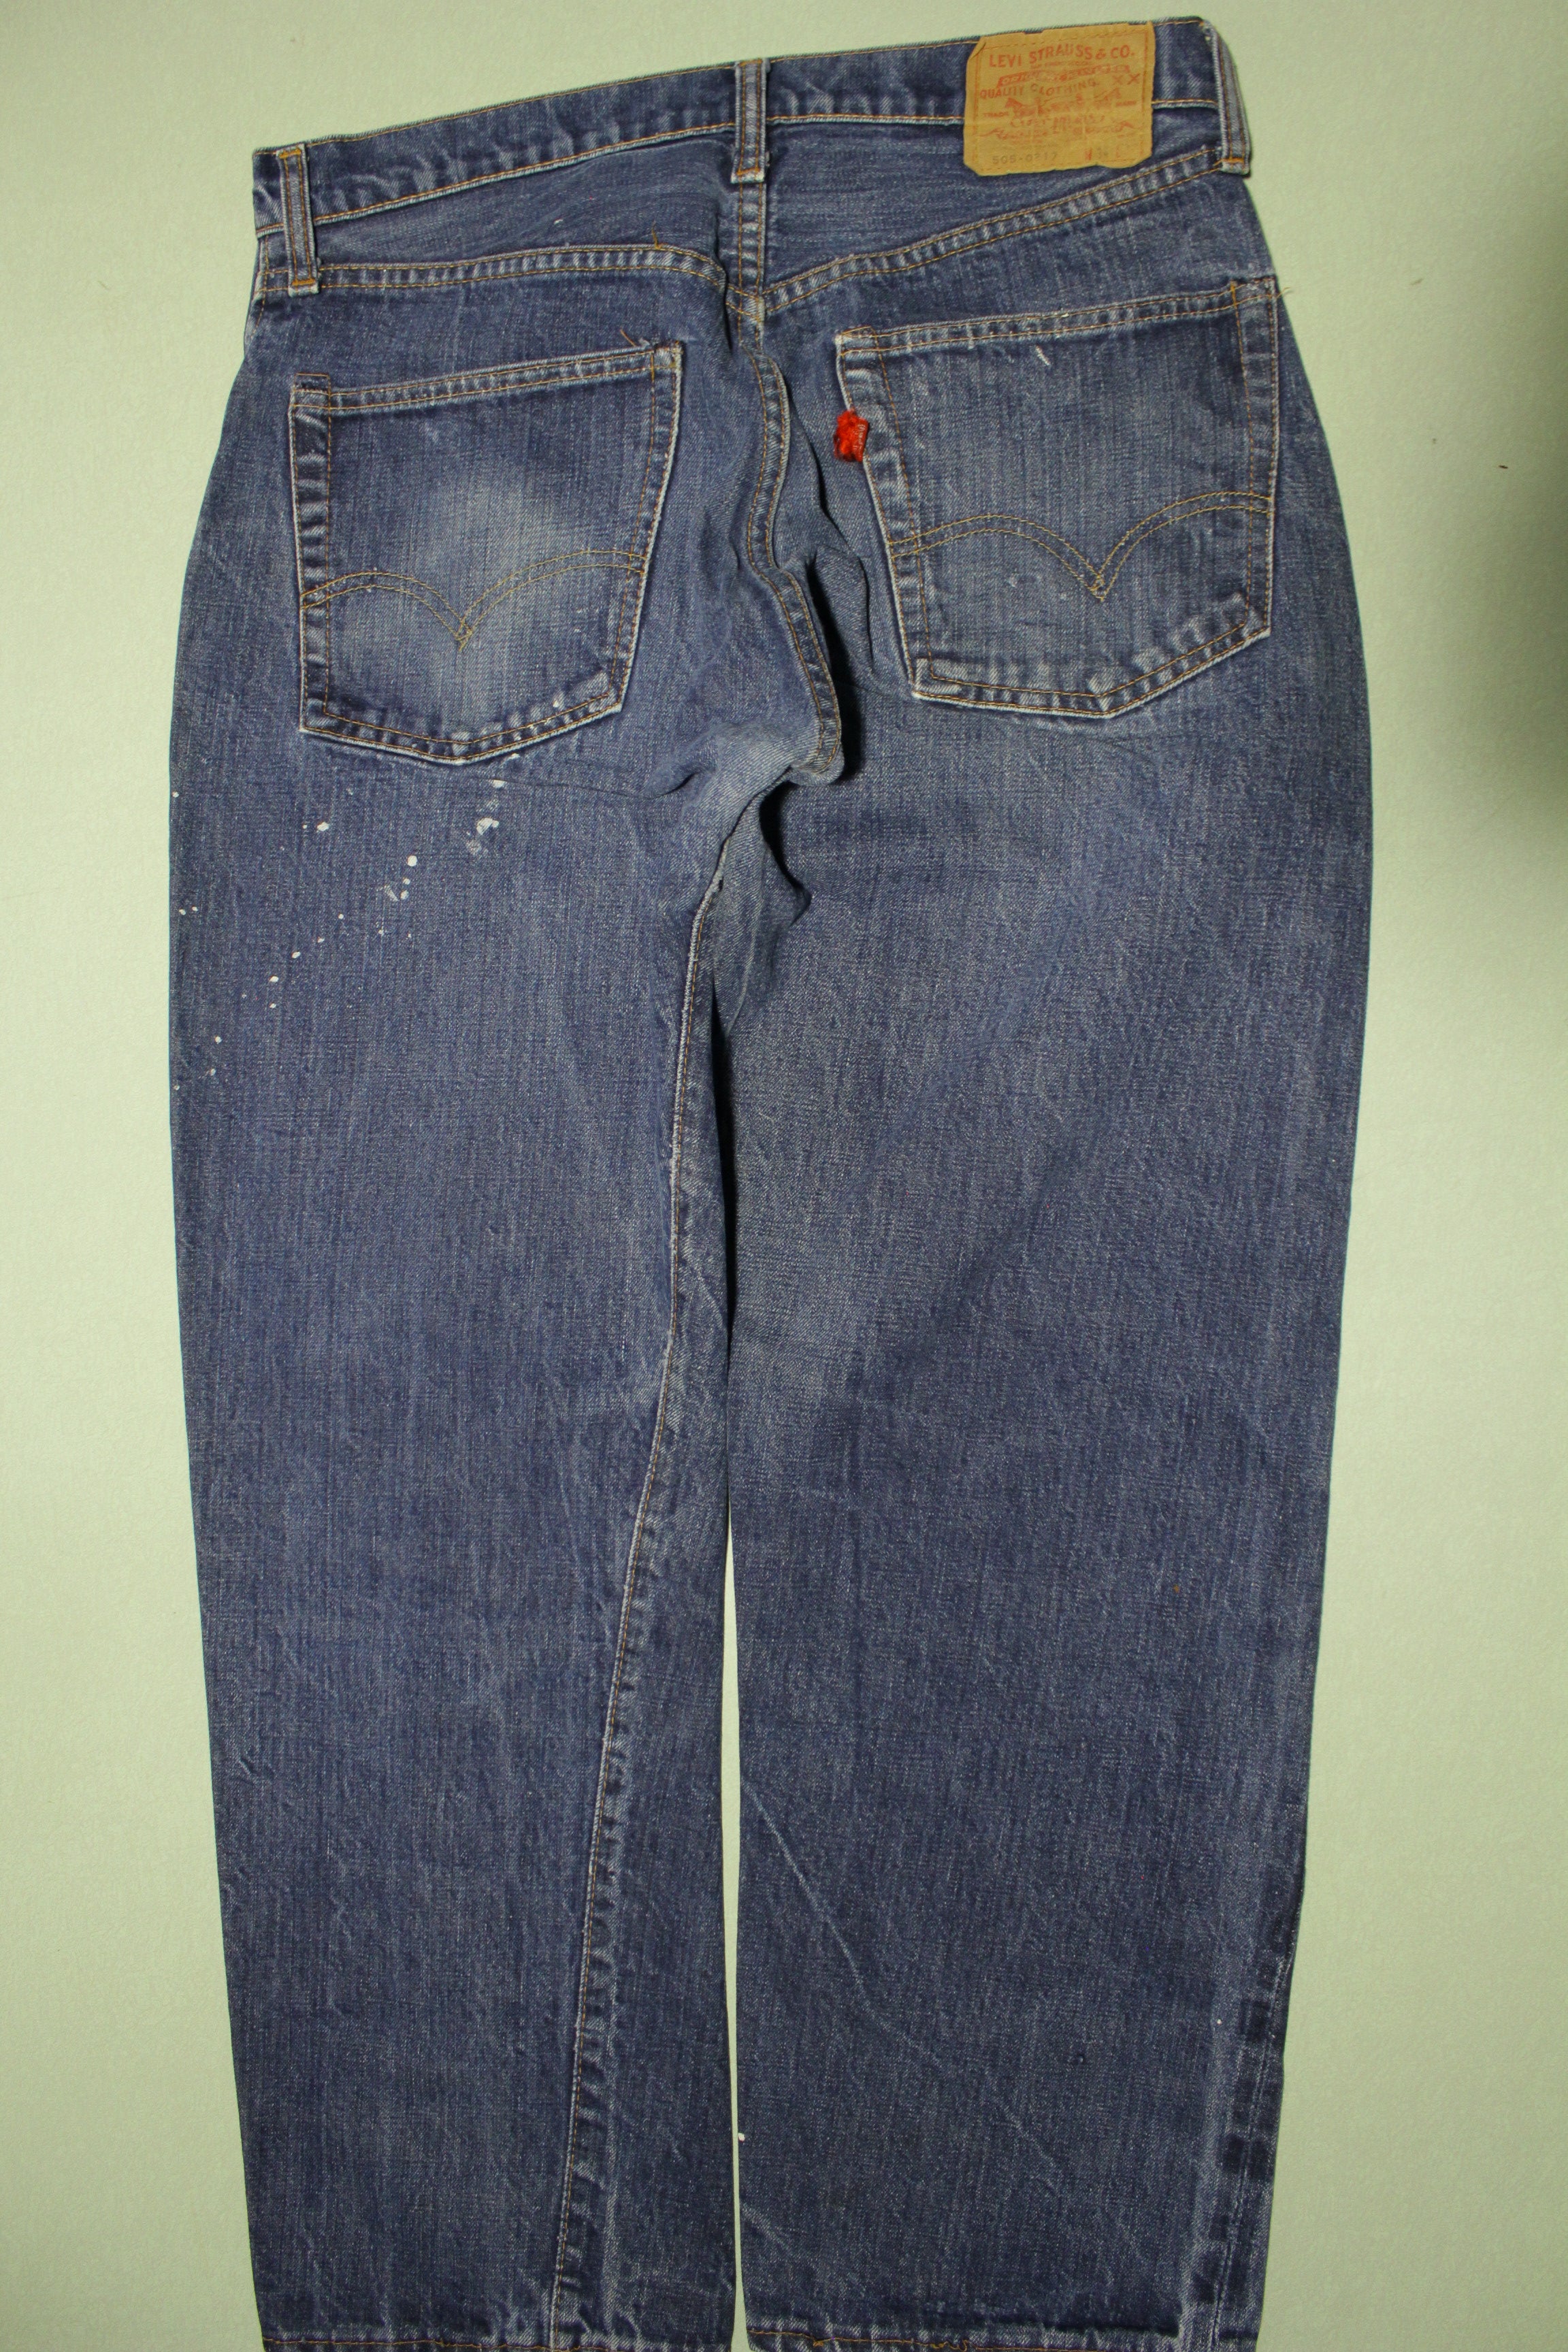 Levis 505-0217 Vintage Big E 60s Selvedge Denim Jeans 505